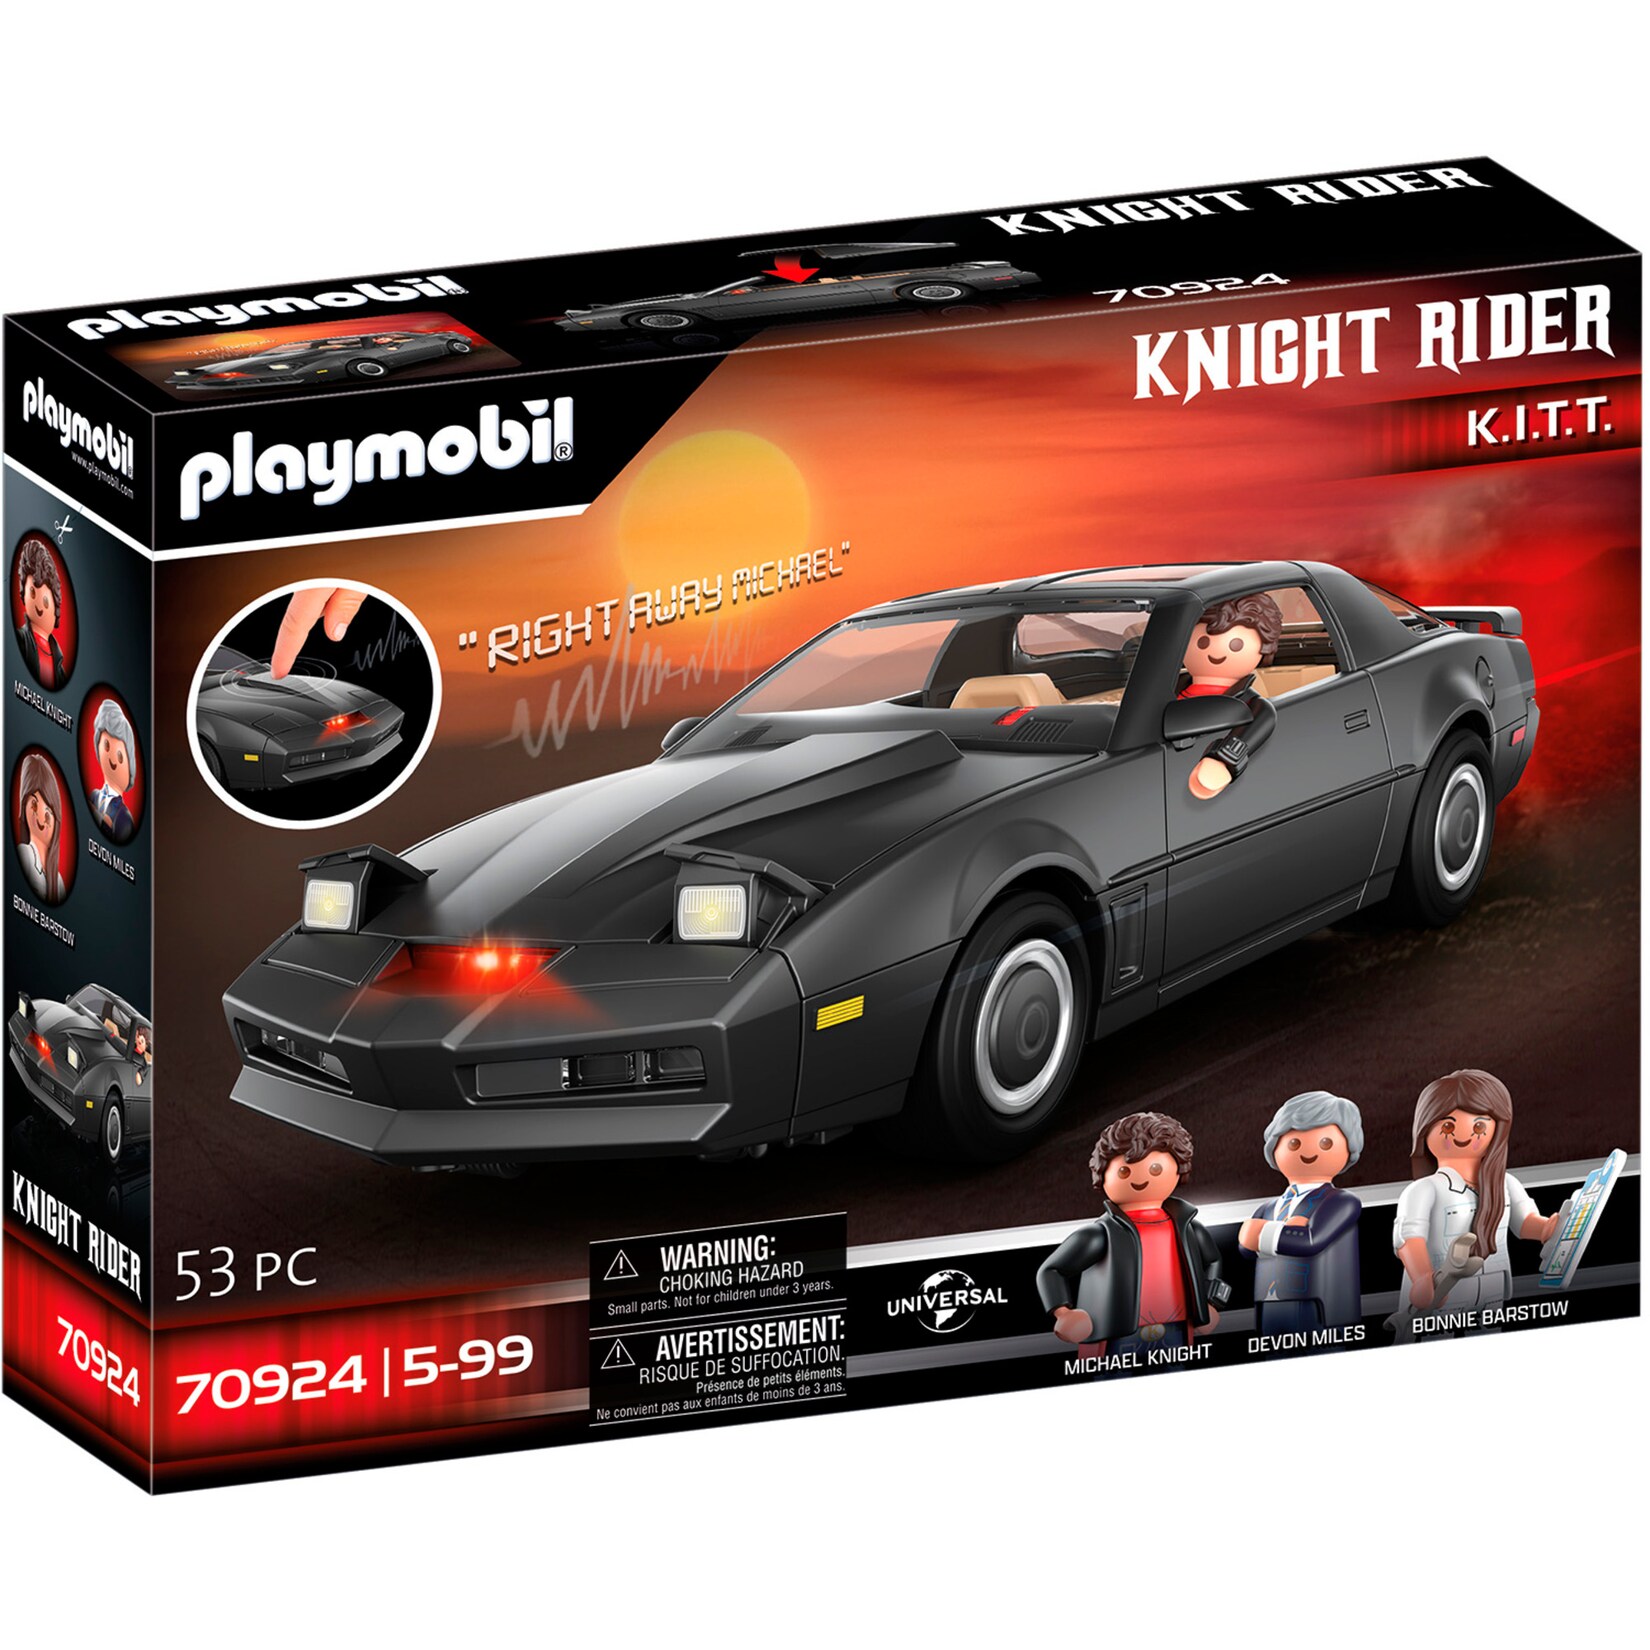 PLAYMOBIL Konstruktionsspielzeug Knight Rider K.I.T.T.